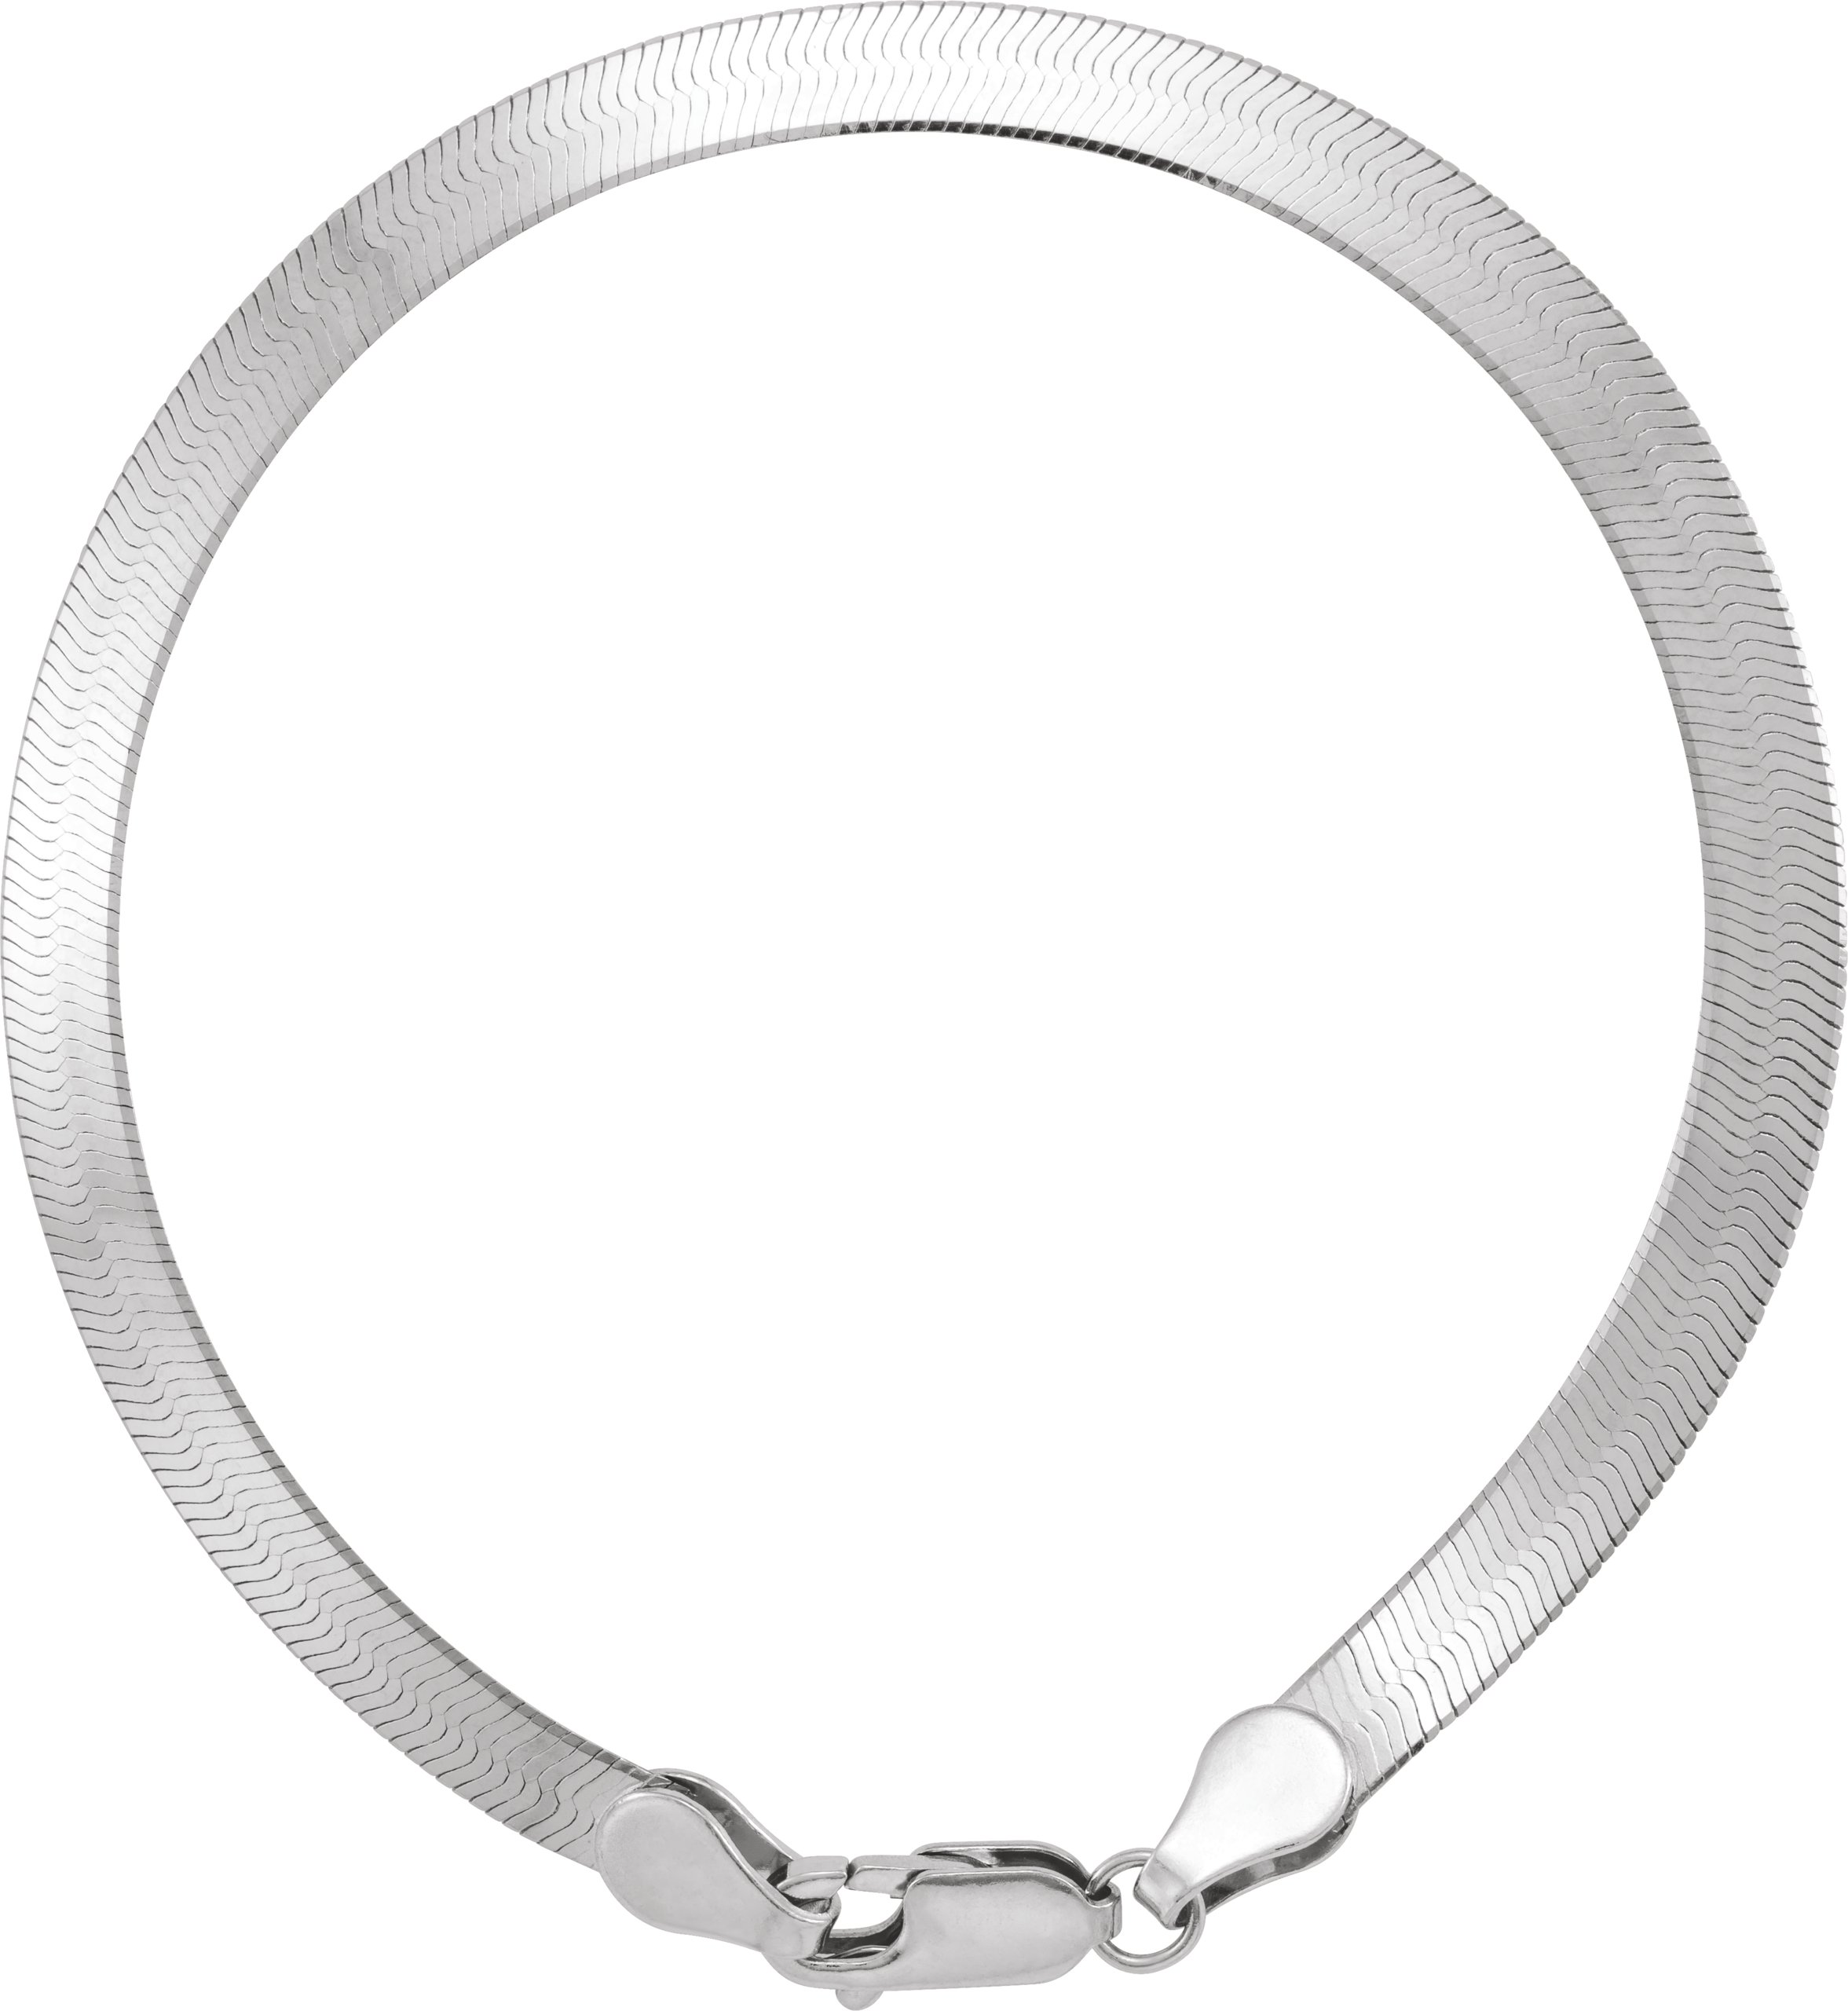 14K White 4.6 mm Flexible Herringbone 7" Chain